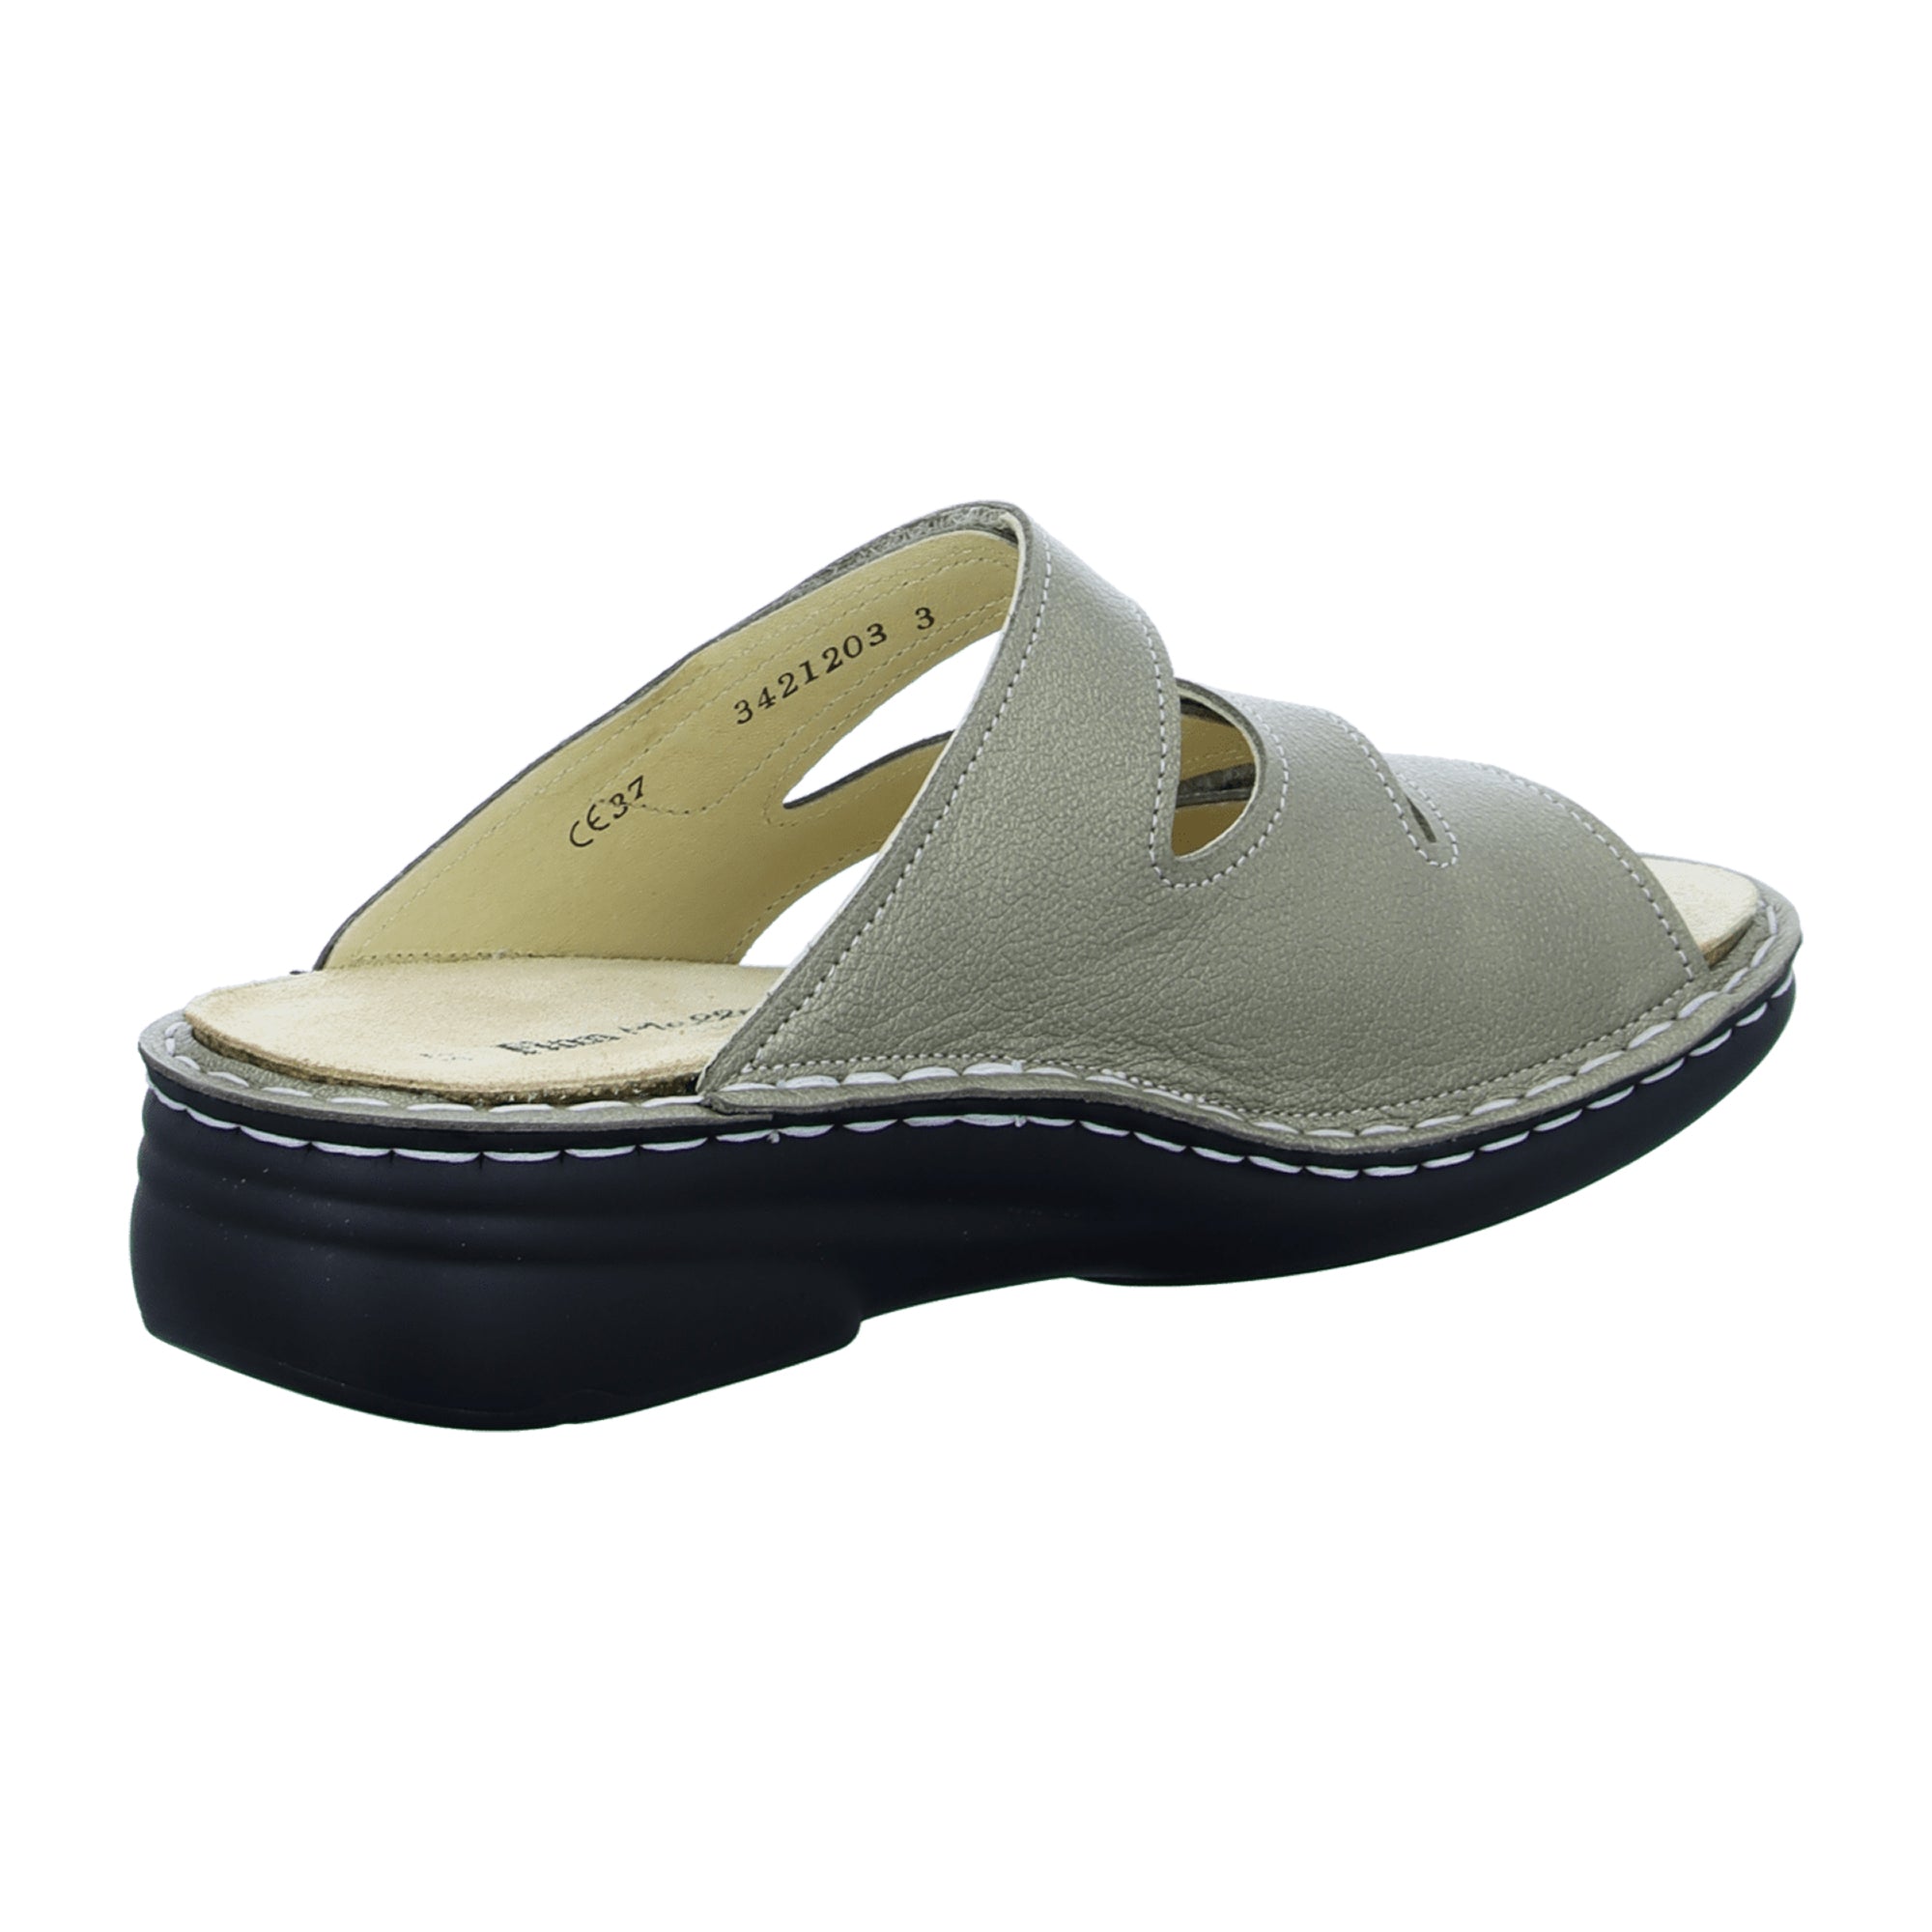 Finn Comfort Grenada Women's Comfort Sandals in Gold